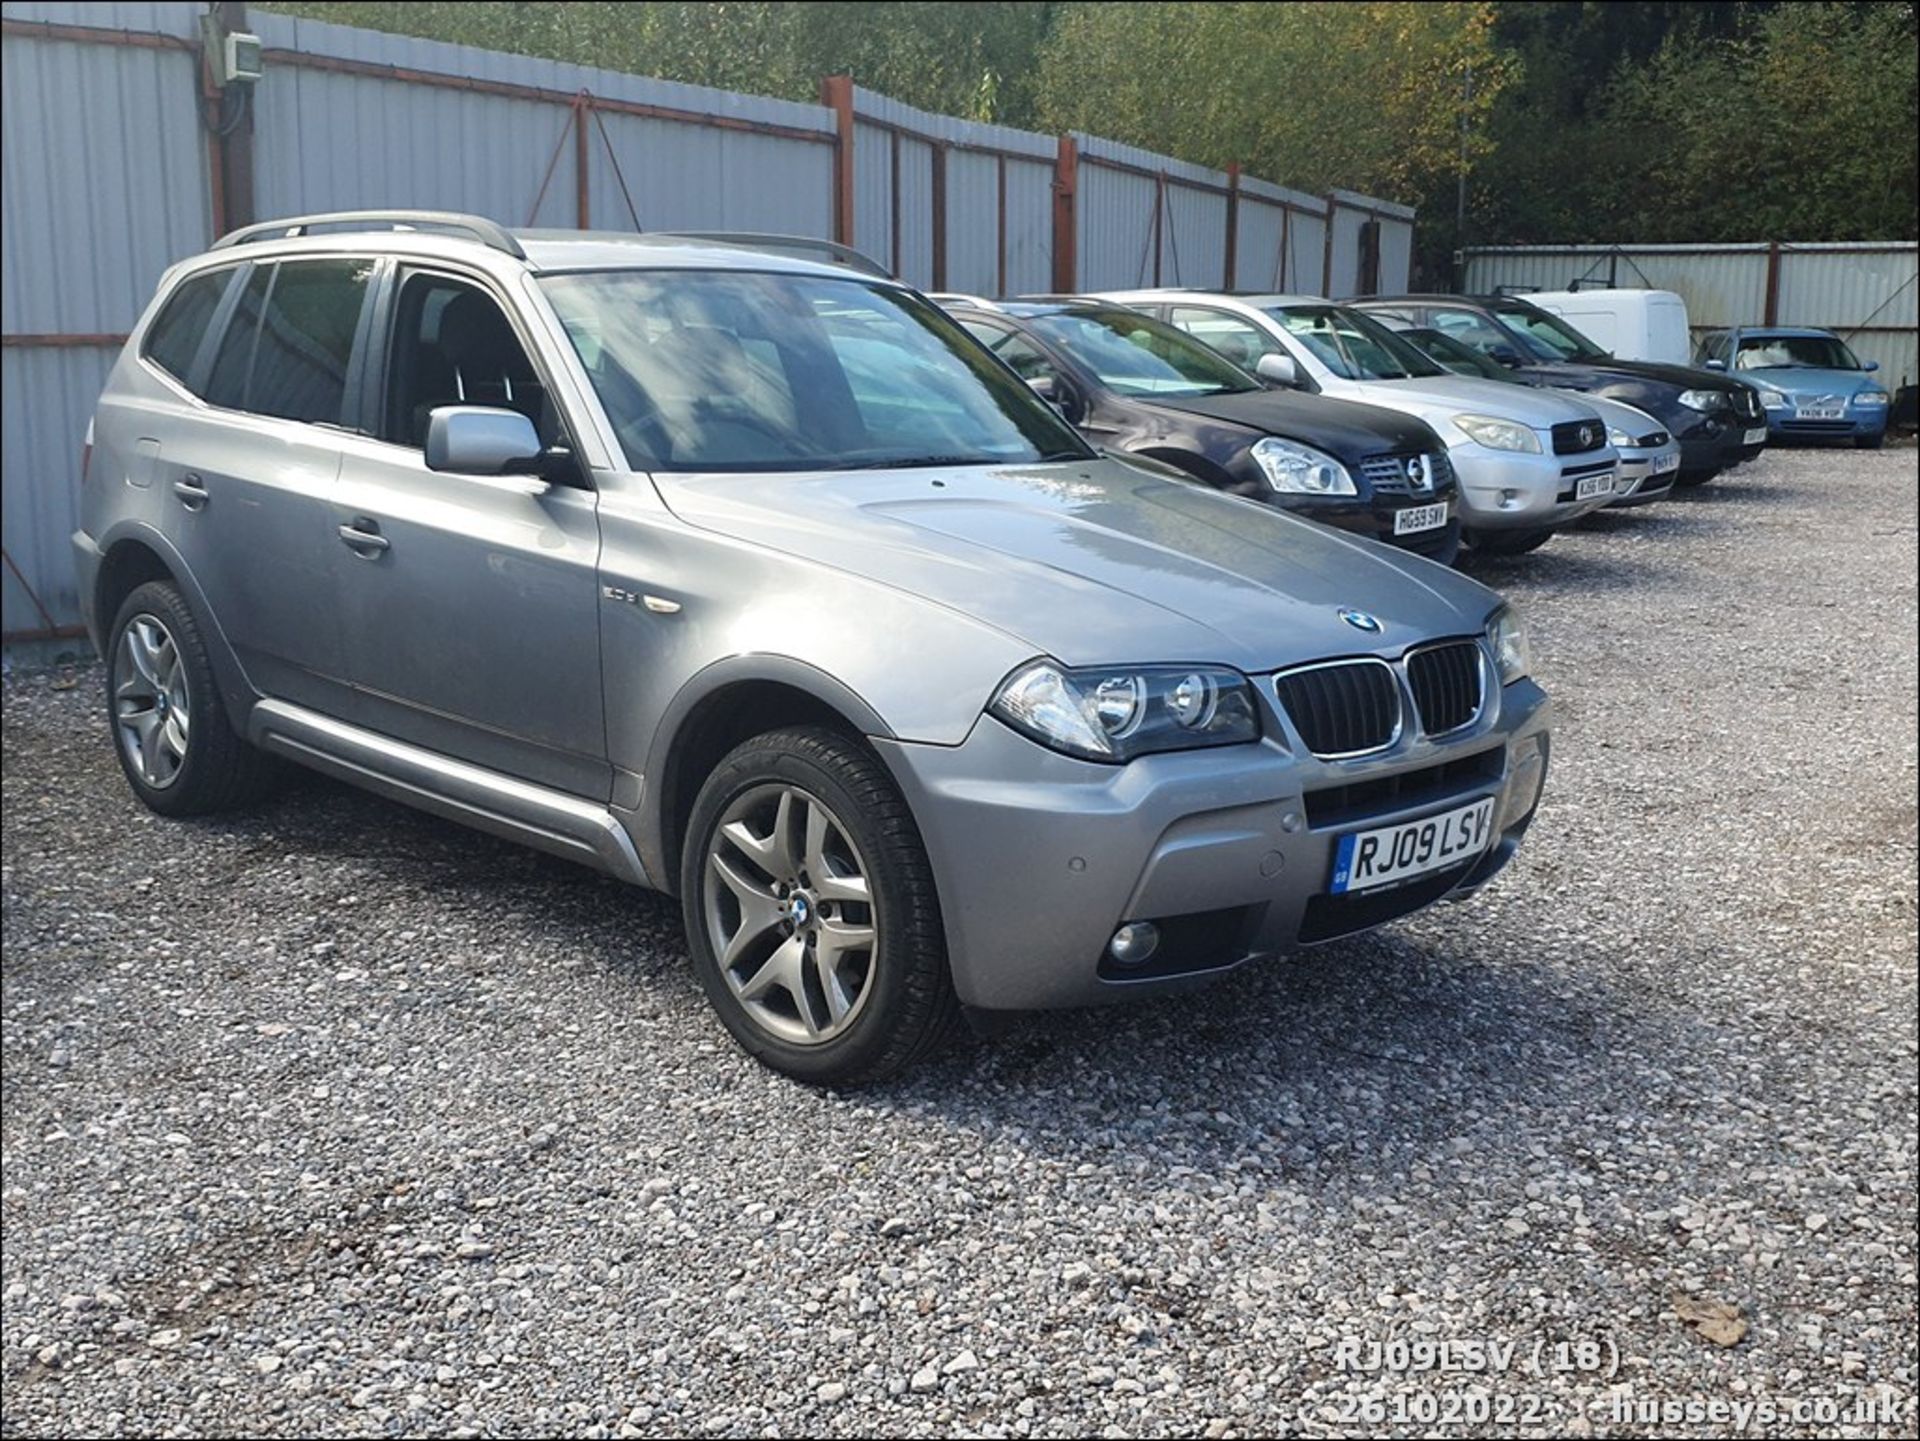 09/09 BMW X3 2.0D M SPORT AUTO - 2000cc 5dr Estate (Grey) - Image 18 of 28